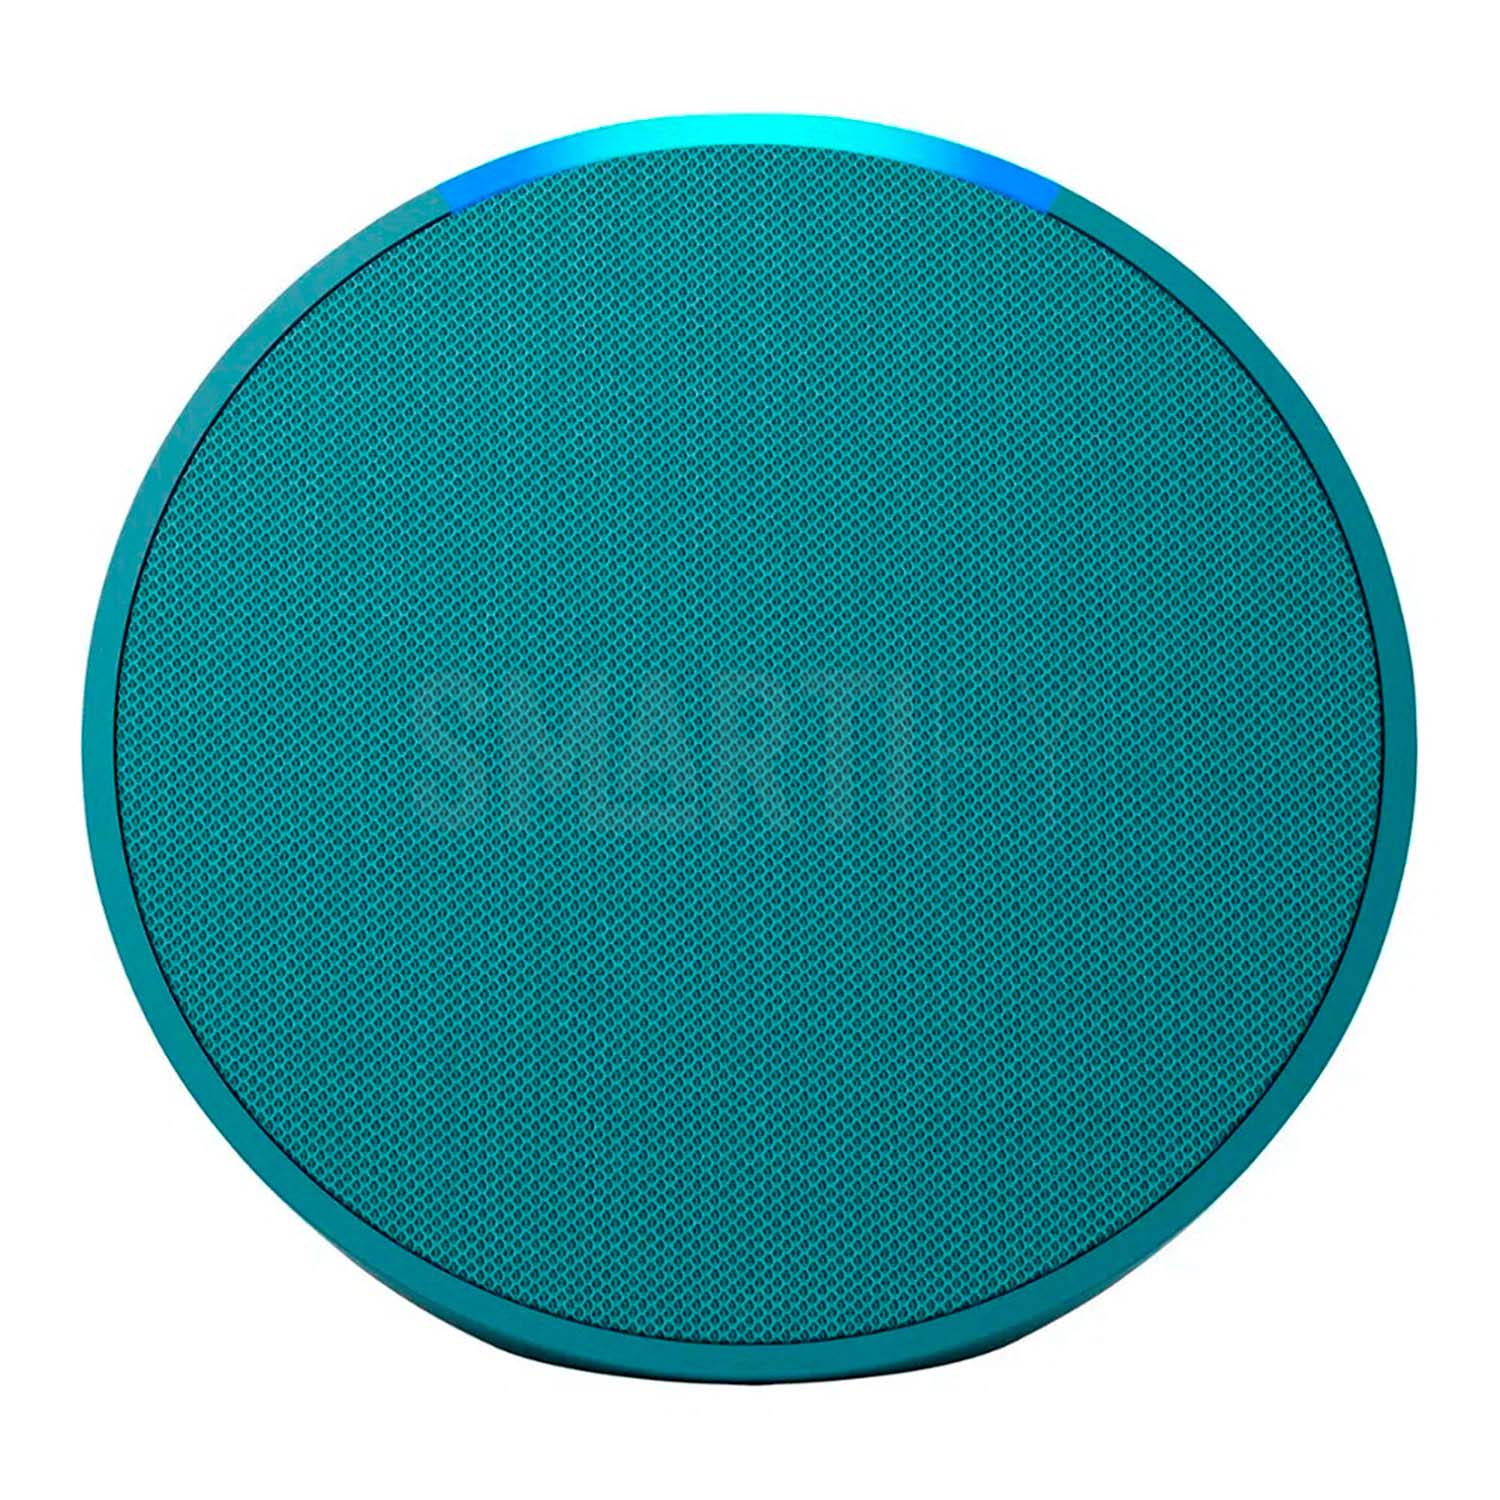 Echo Pop – Verde Azulado – Alexa – WIFI y Bluetooth